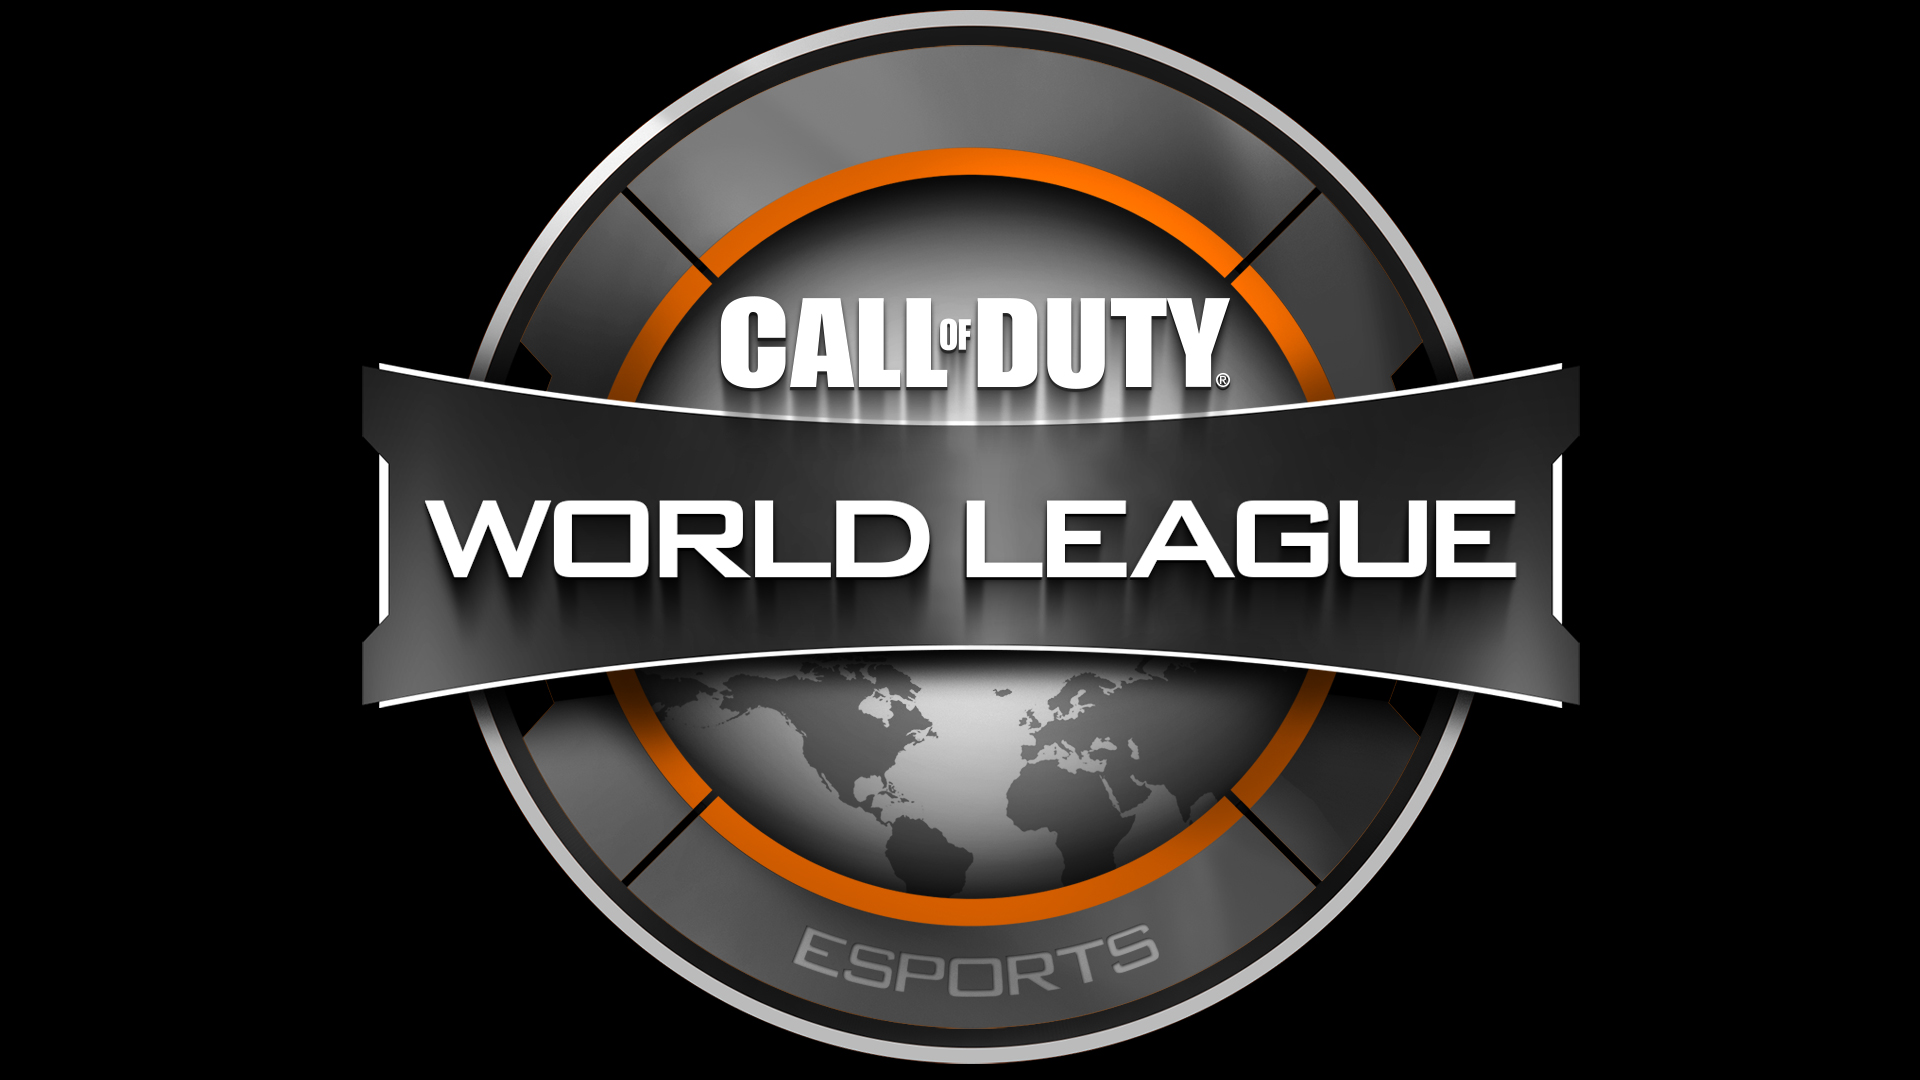 CWL Open - Call of Duty World League